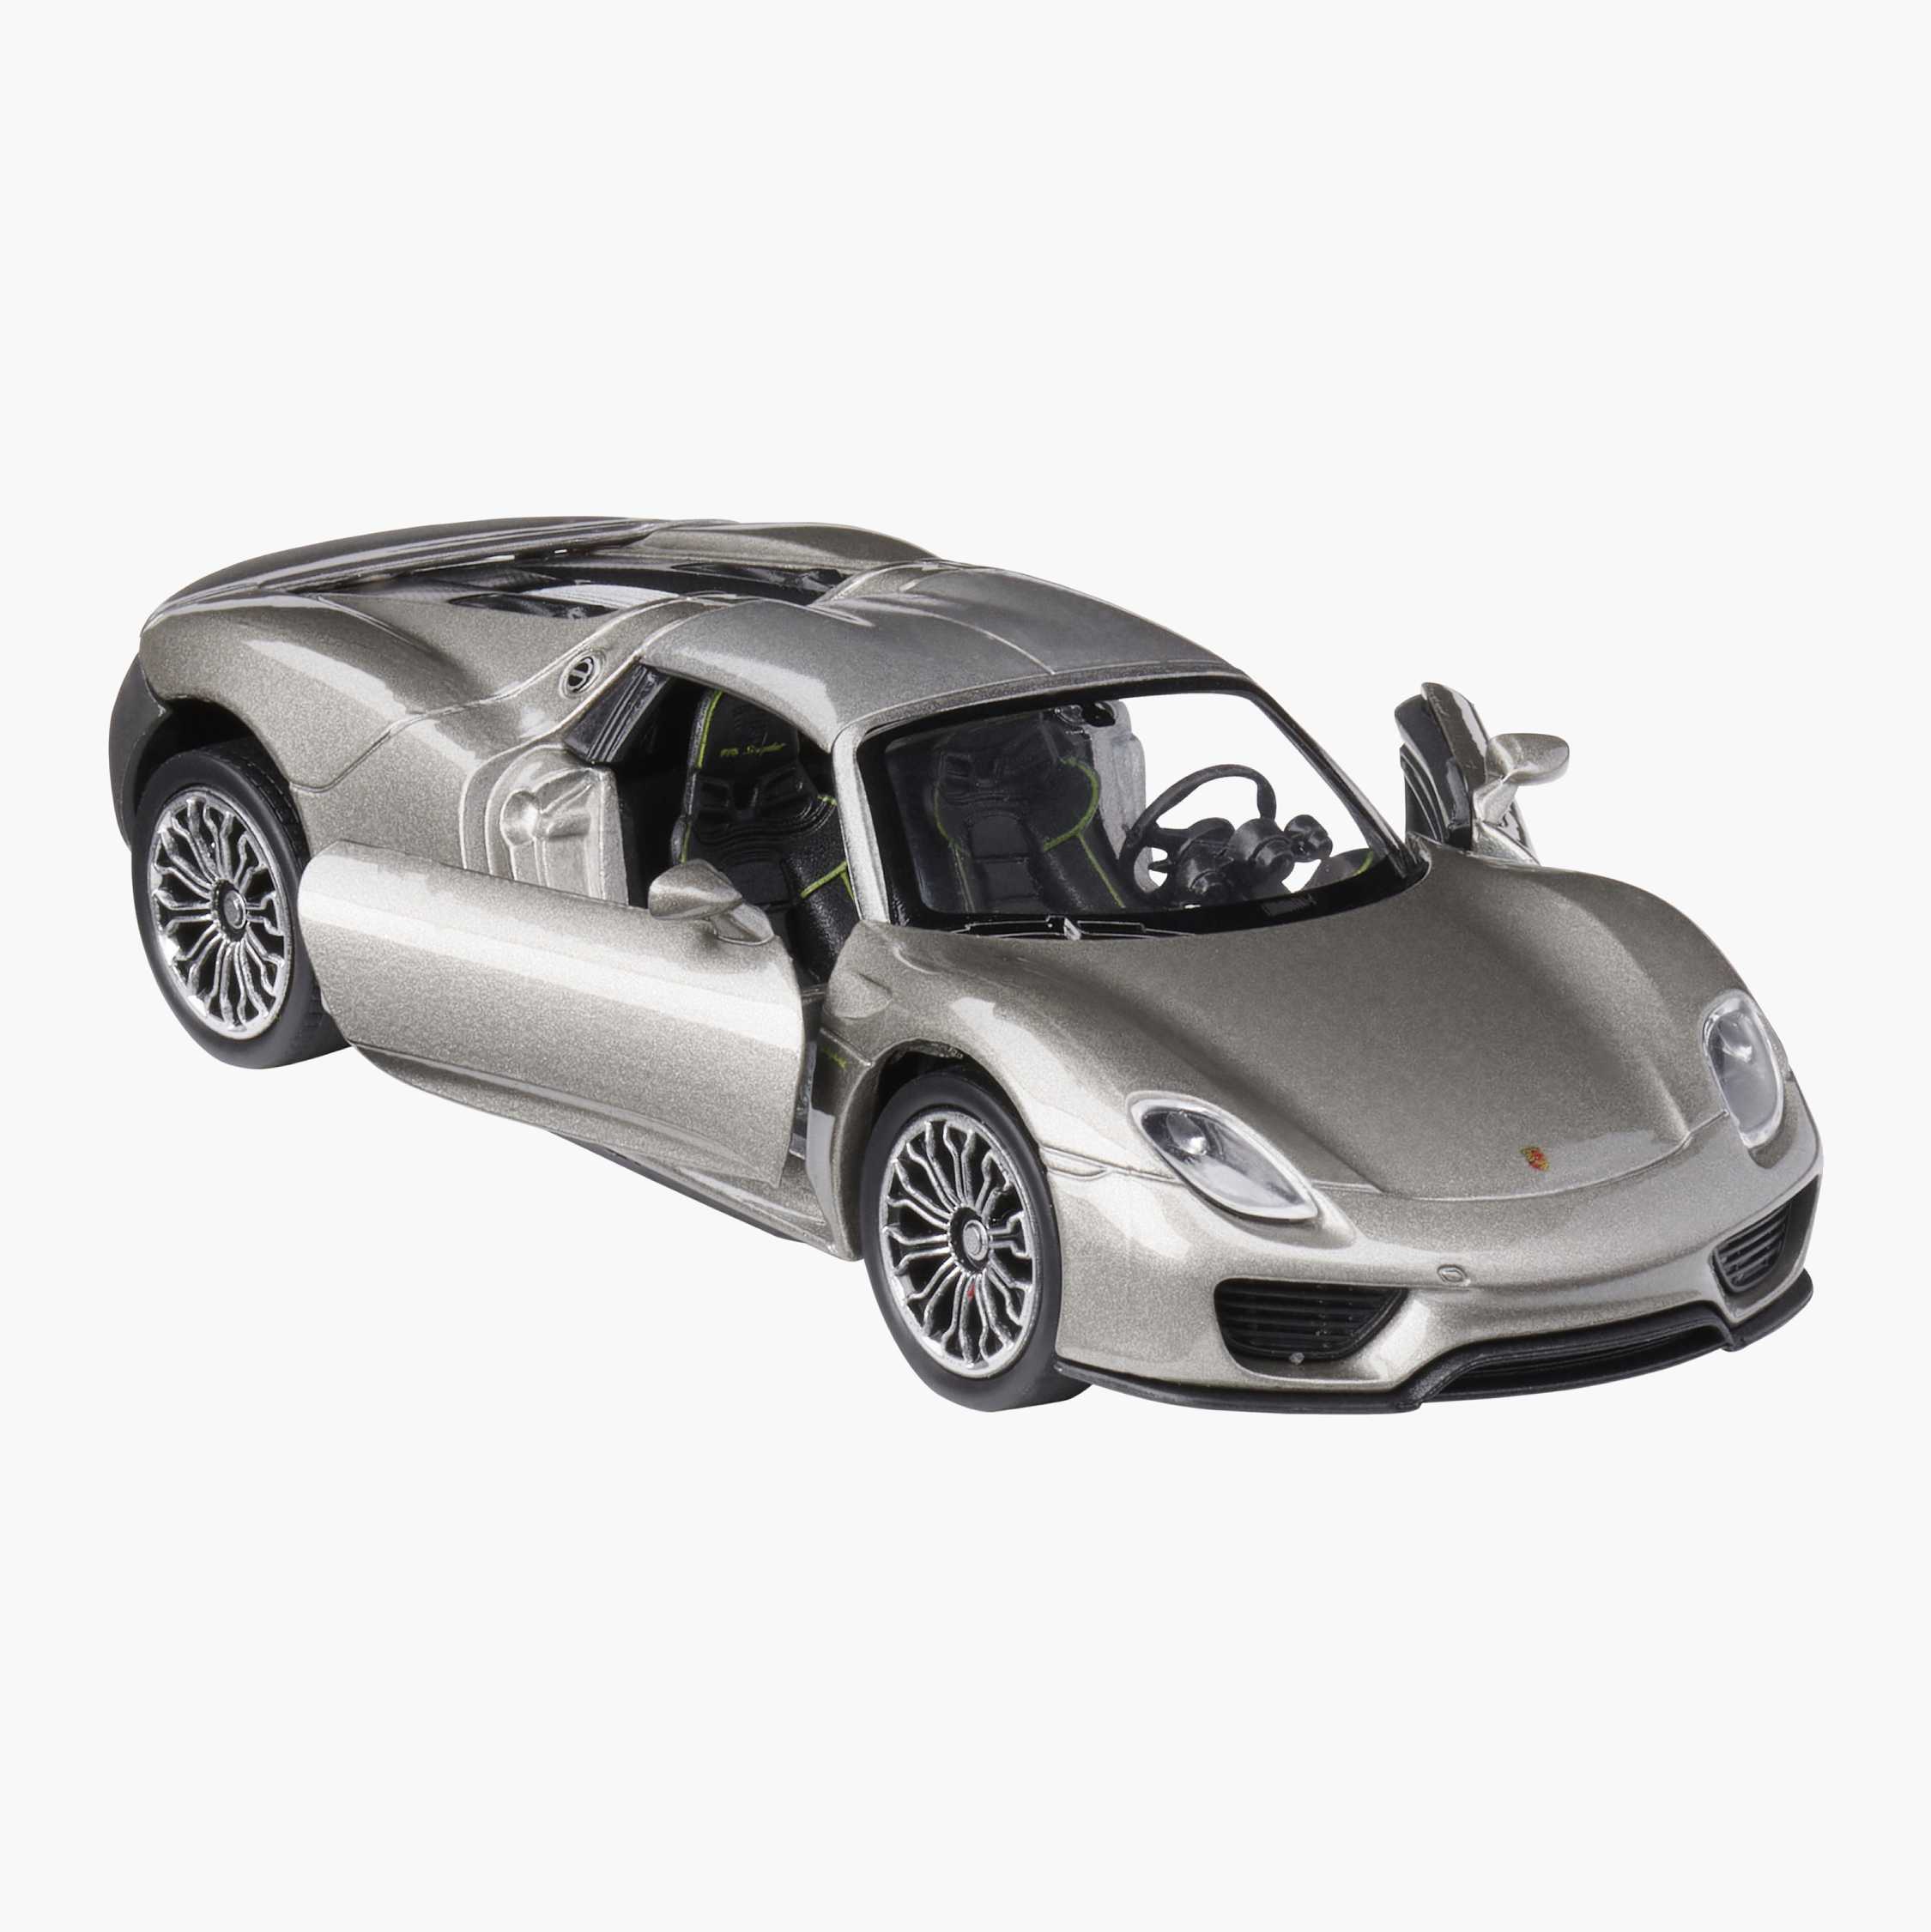 Bburago  18 – 21076 GY  Porsche 918 Spyder Car Toy Grey 